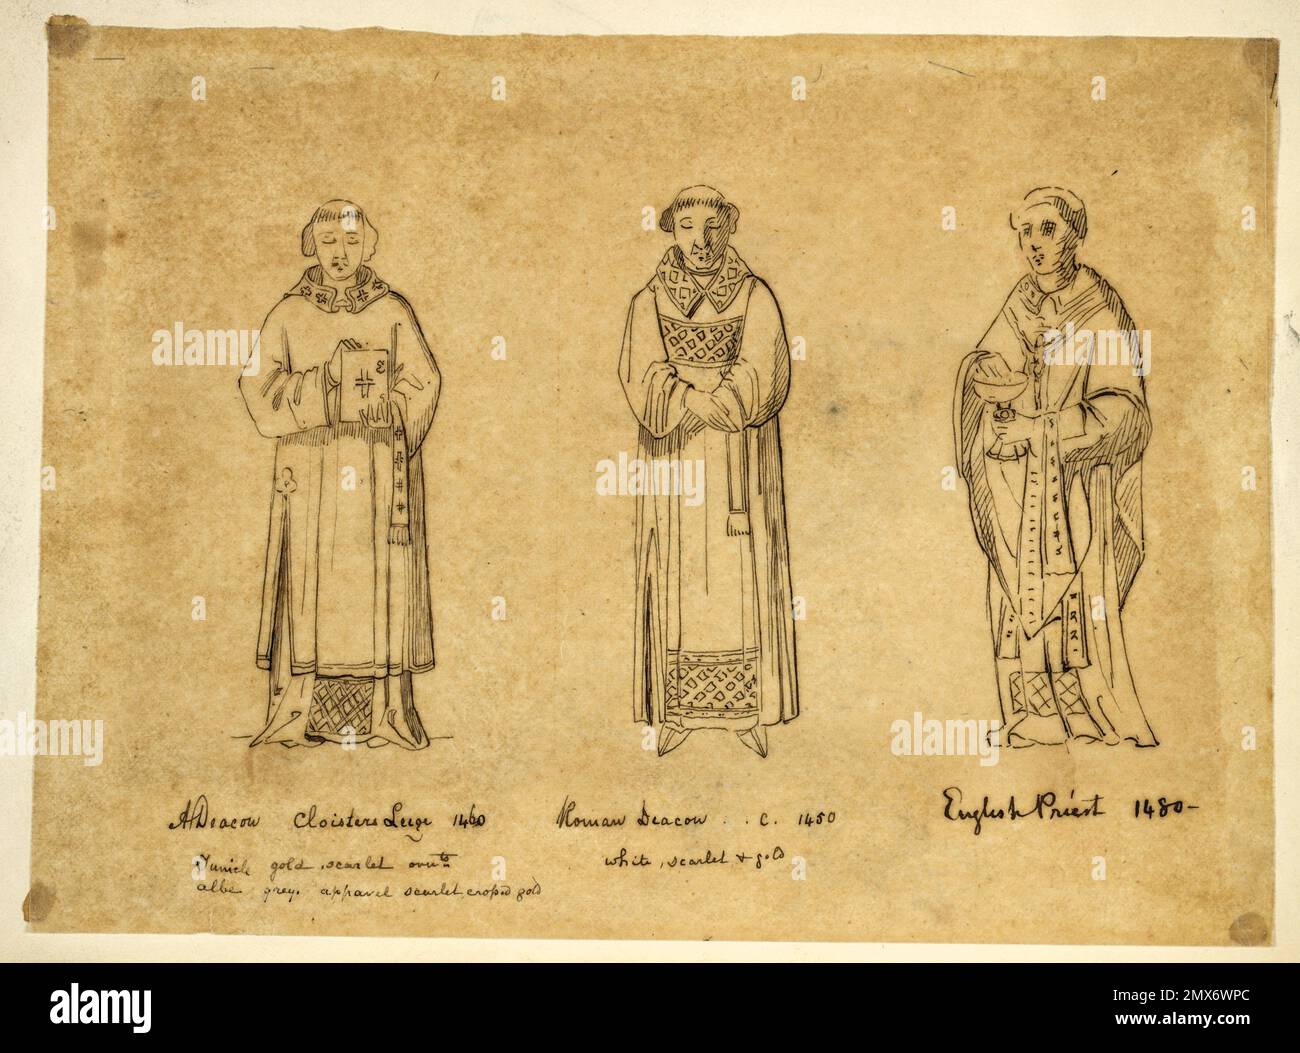 A Deacon Cloisters Leige [sic], 1460; Roman Deacon, c. 1450; englischer Priester, 1480. Watson, Stewart, fl. 1843-1847 (Autor) Watson, Stewart, fl. Stockfoto